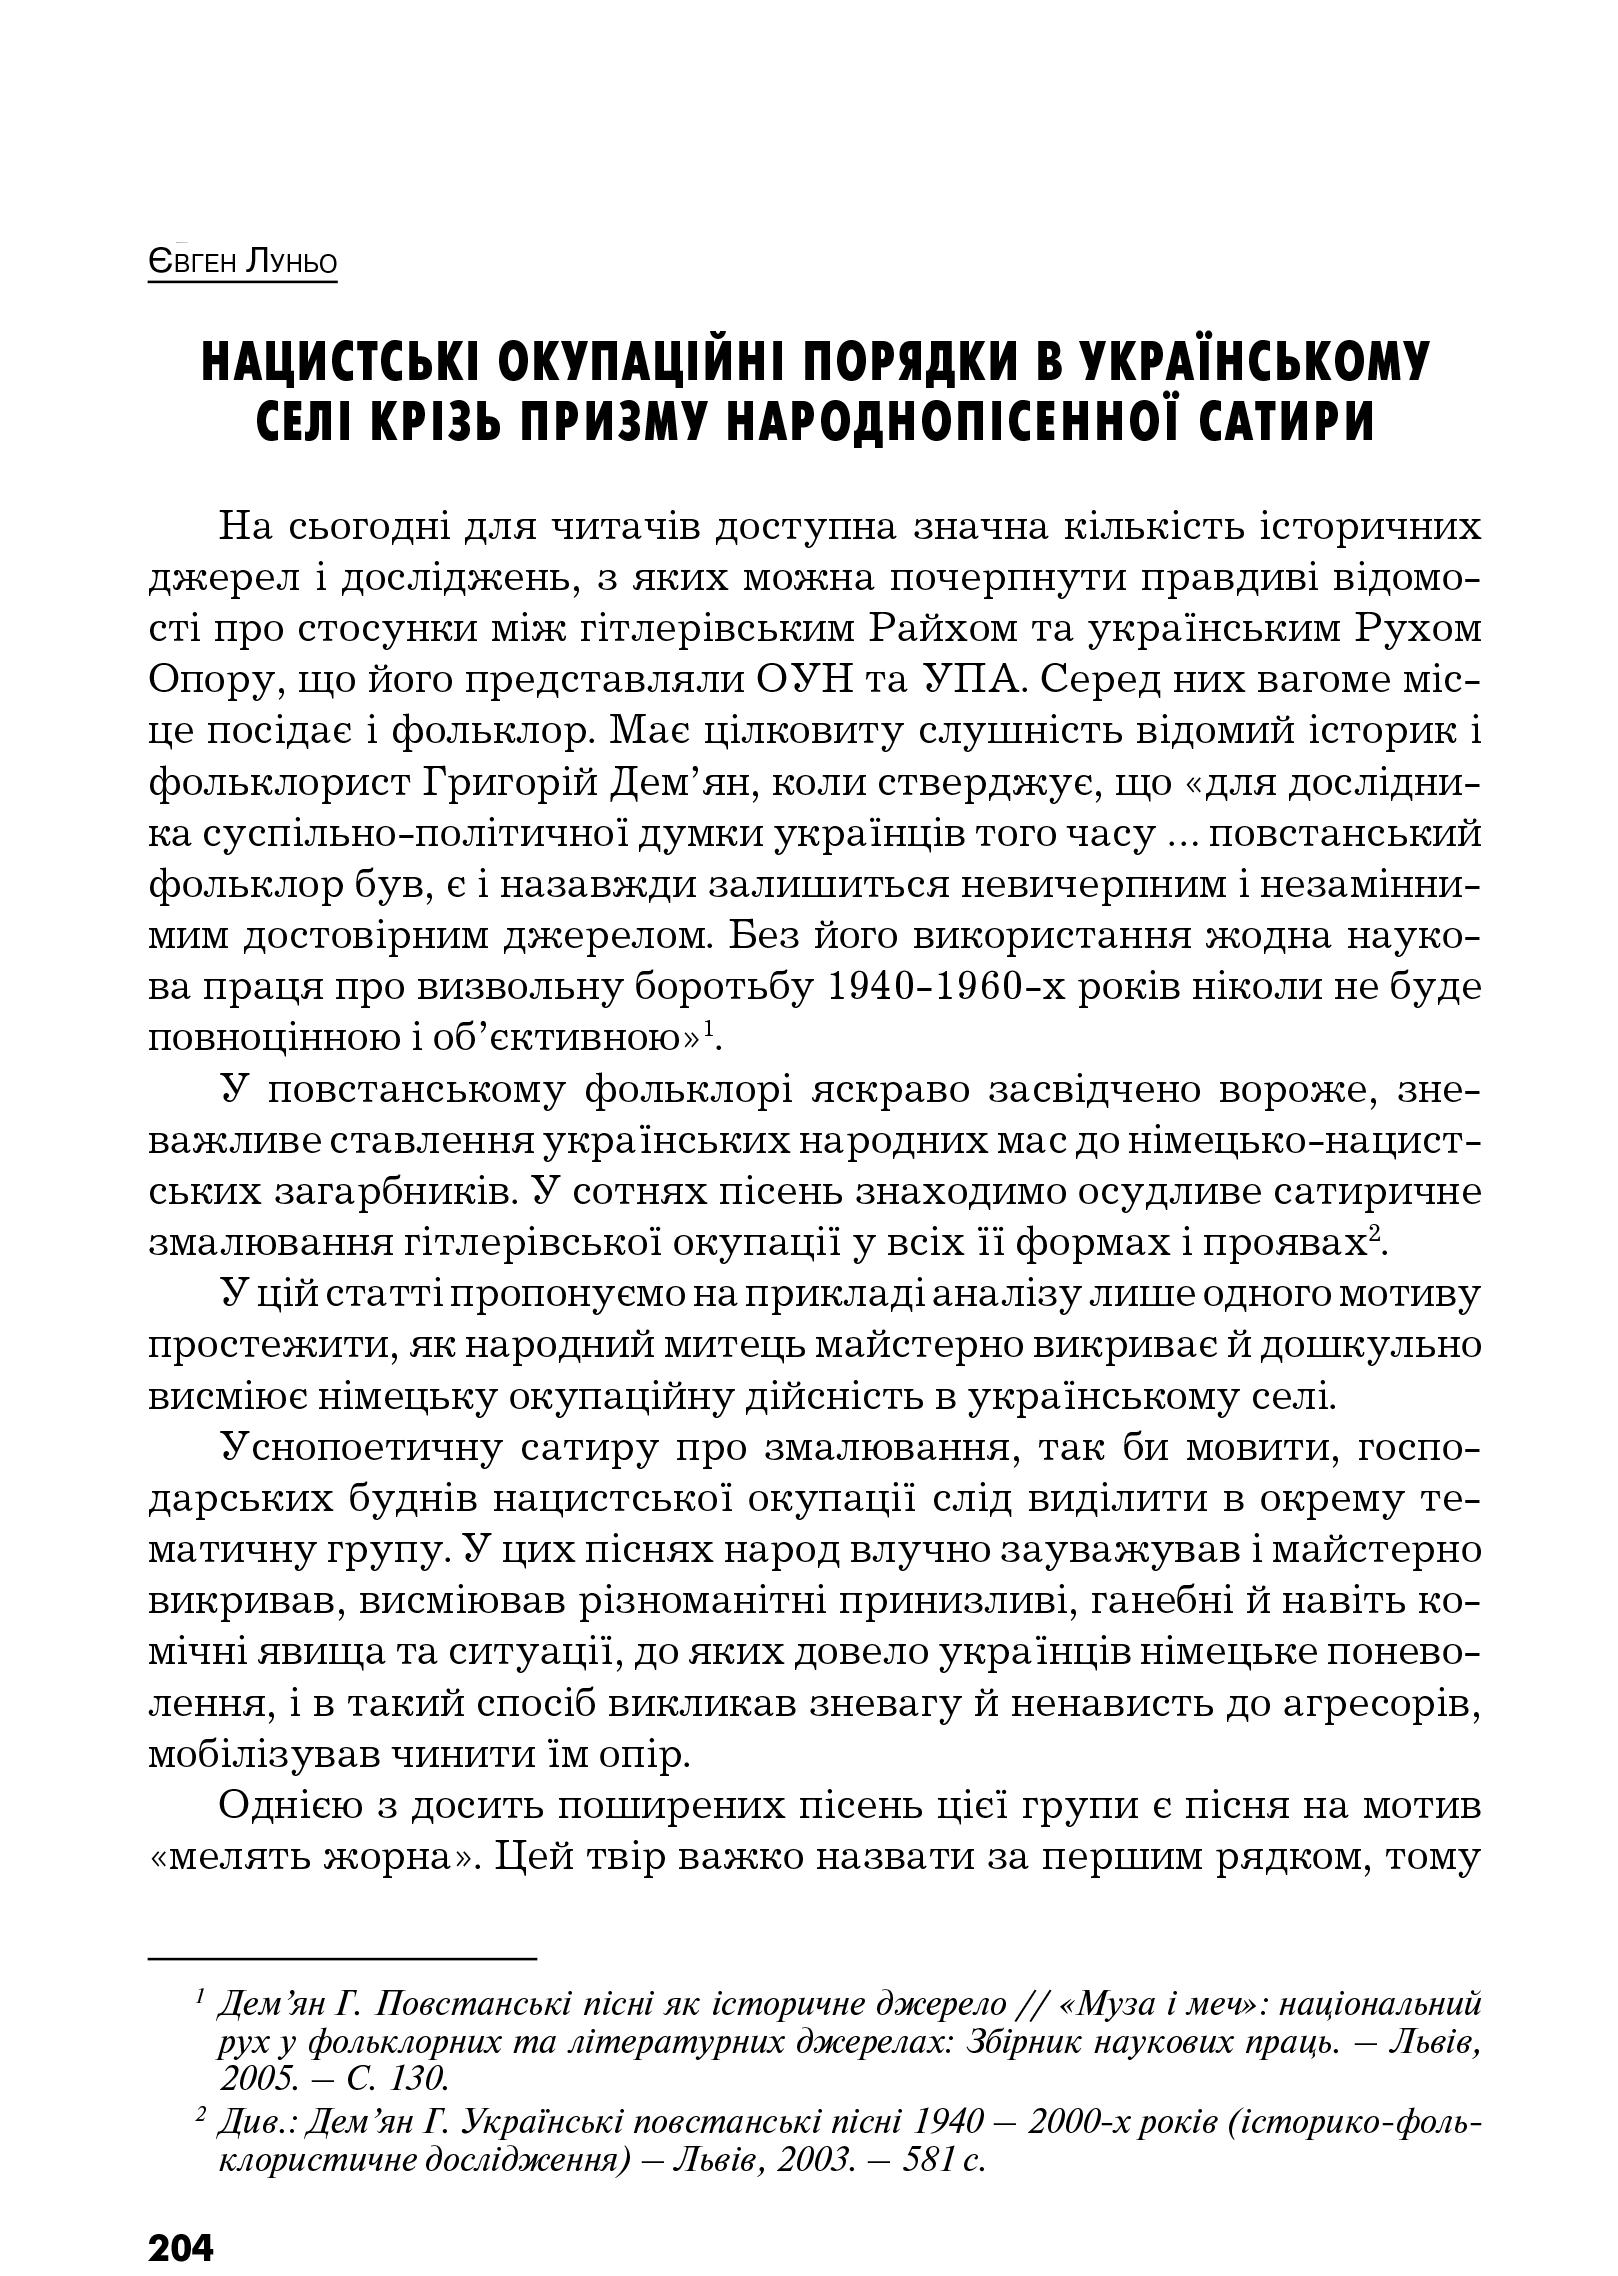 Український визвольний рух №12, ст. 204 - 218